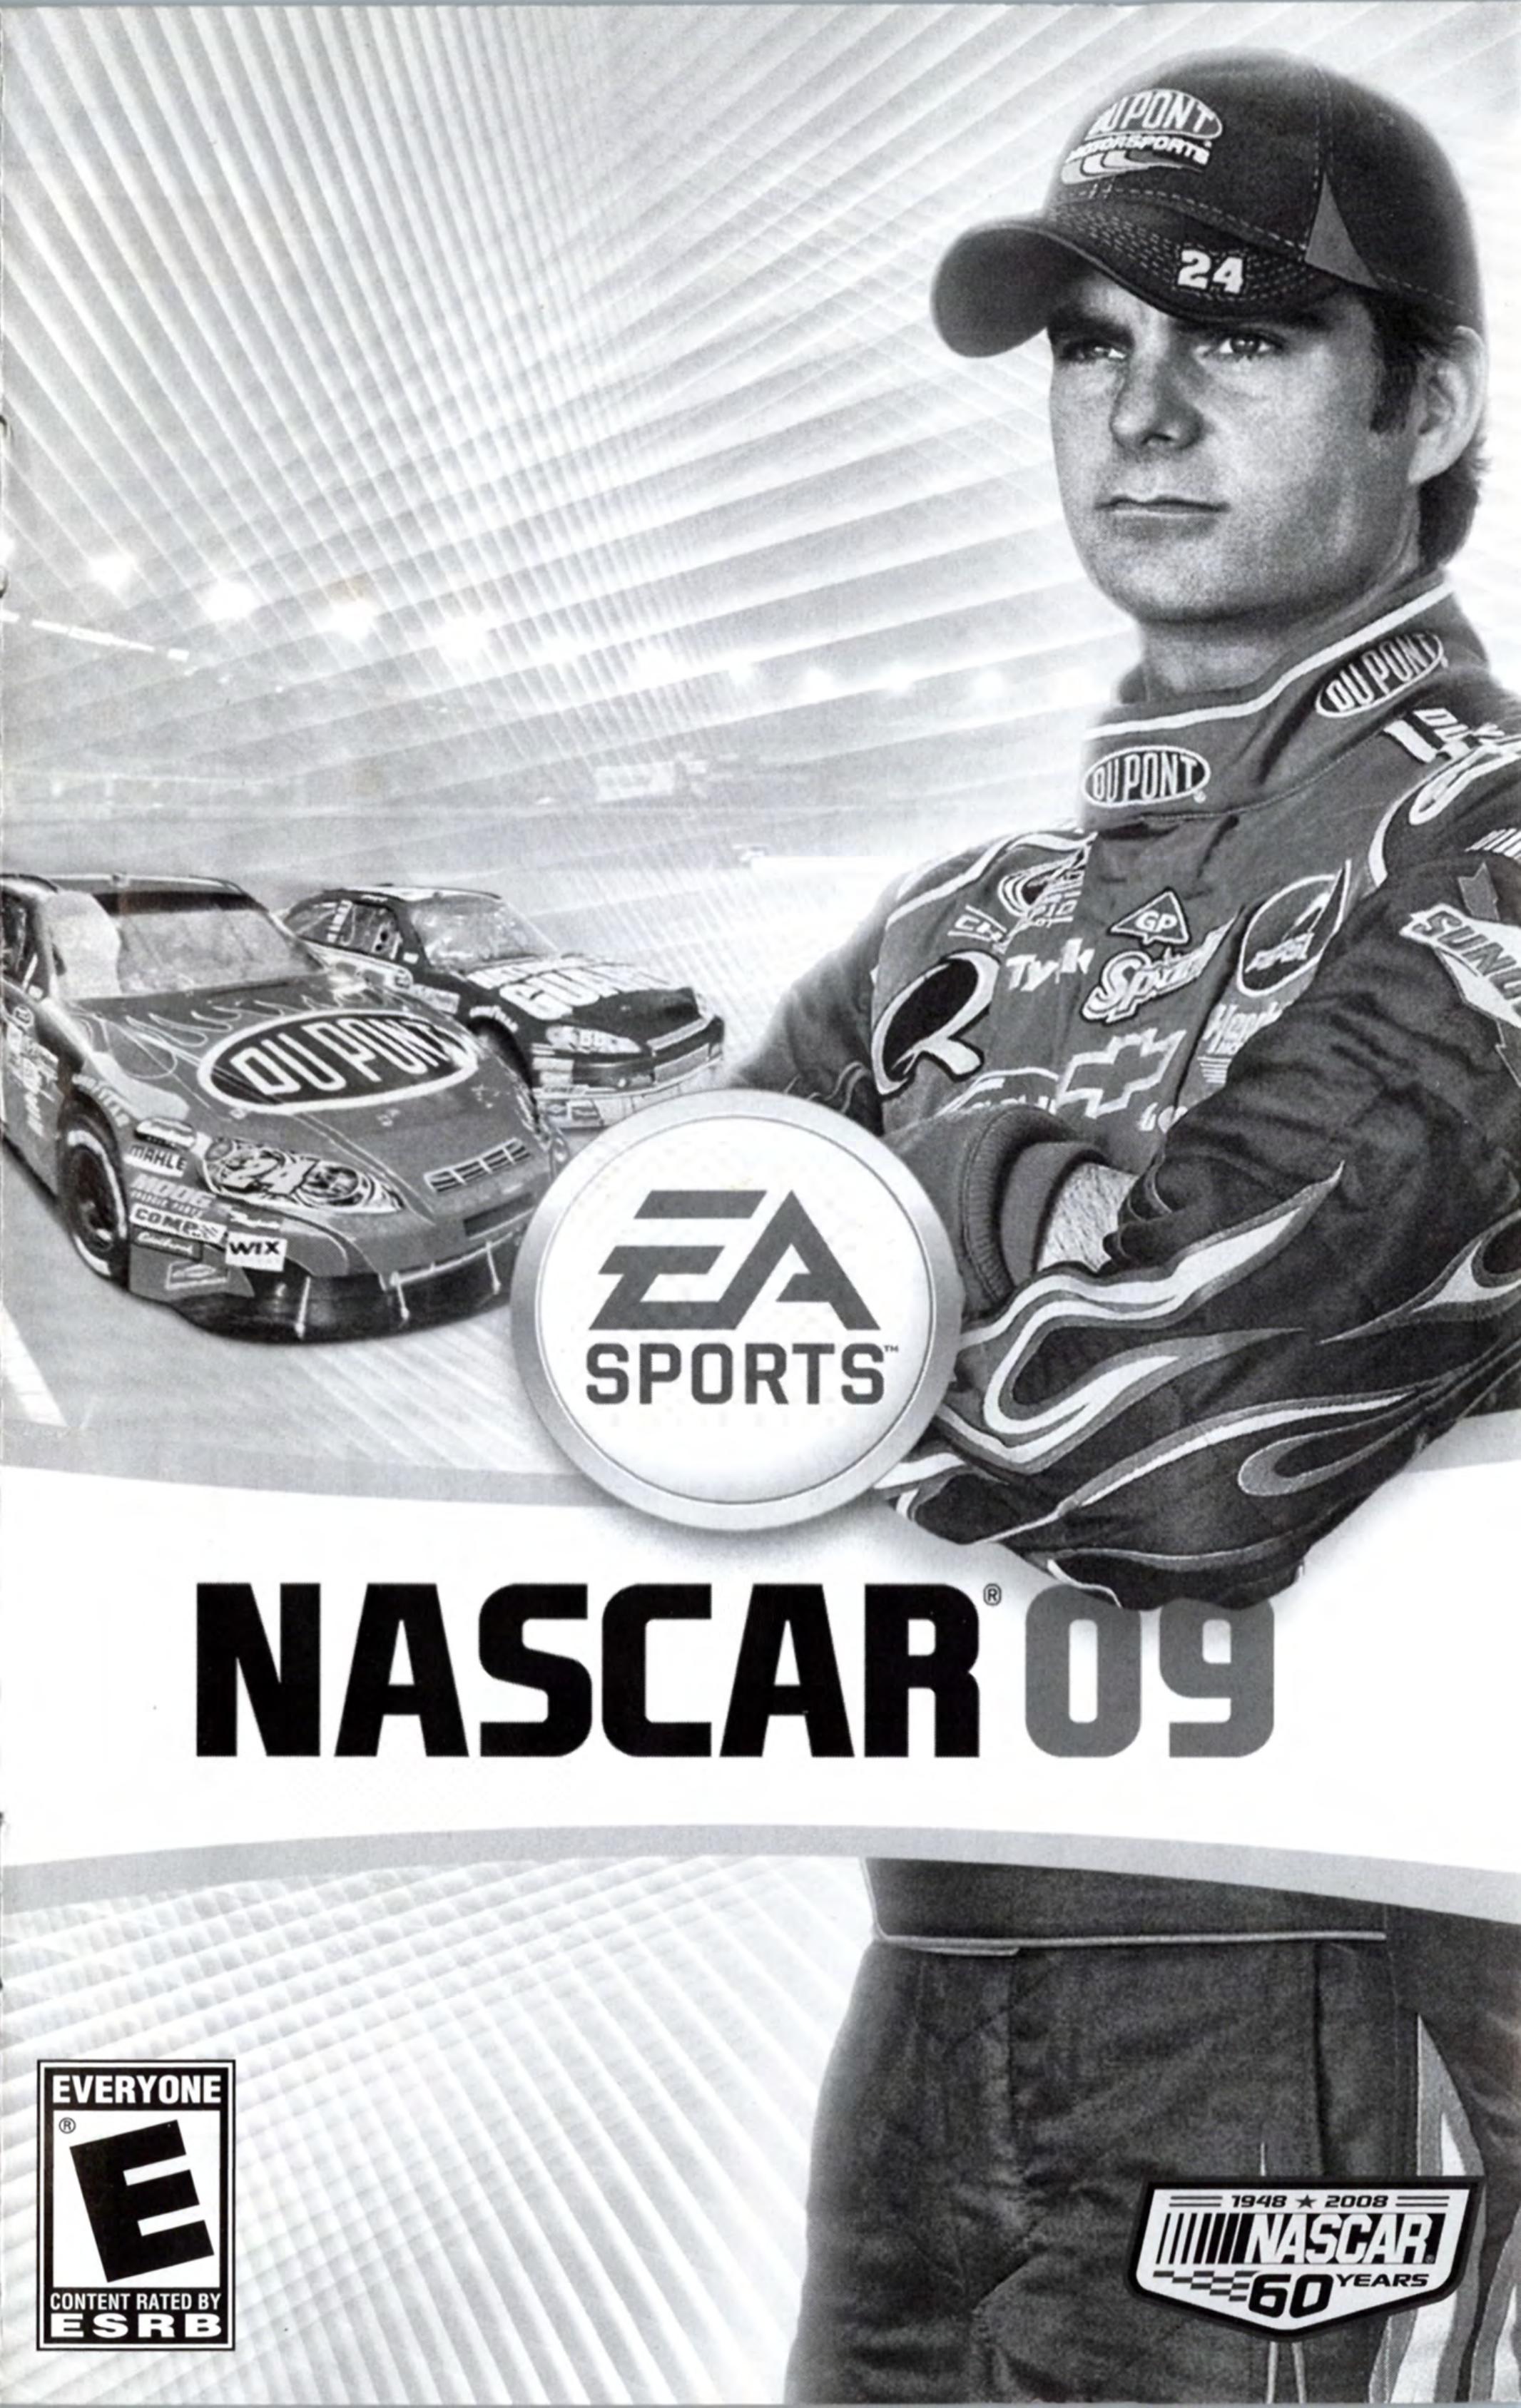 NASCAR 09 (USA) by Jonathan Grimm